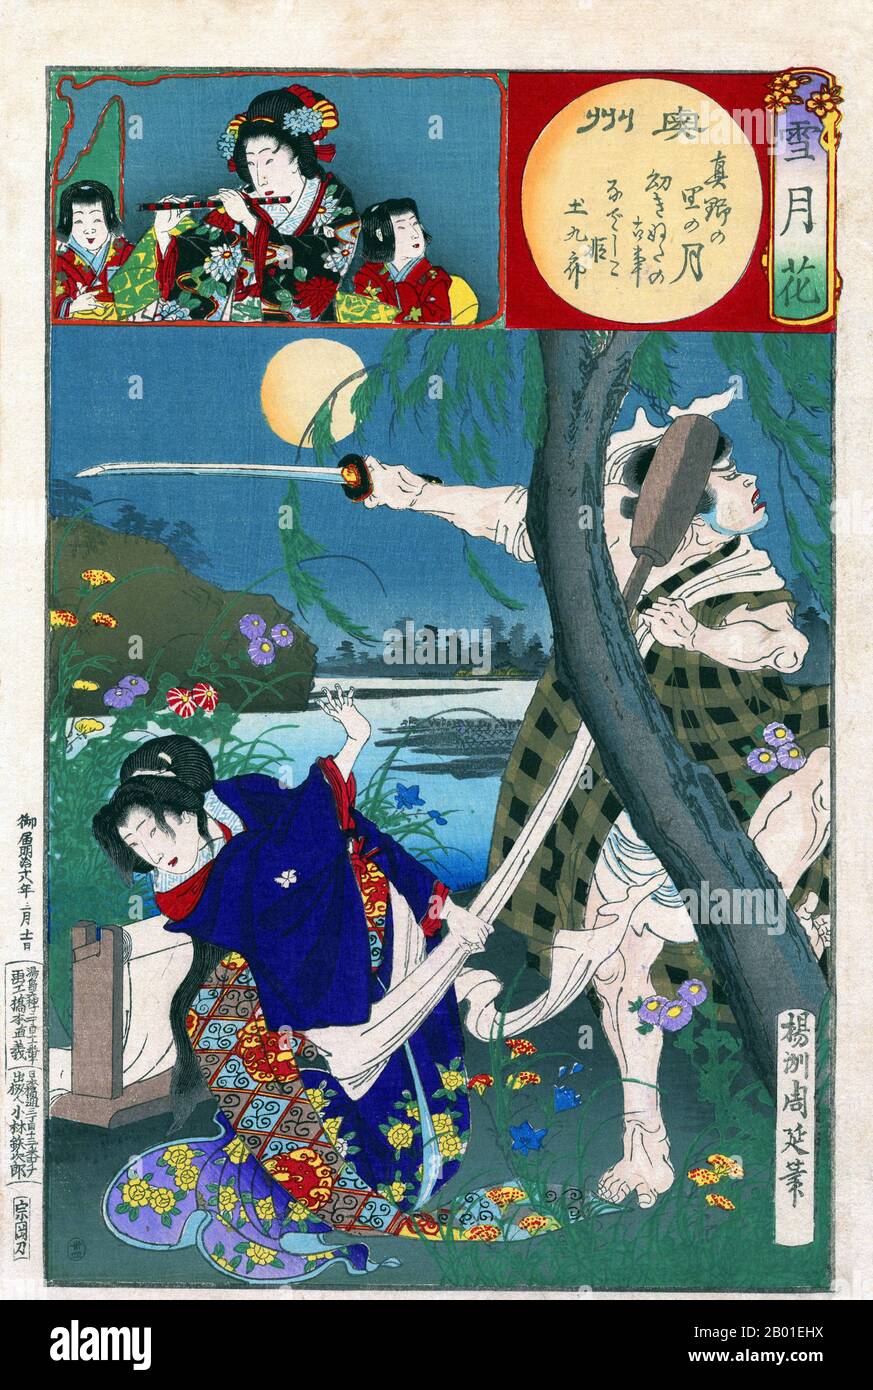 Japon: La princesse Nadeshiko est attaquée par le bandit Tsuchikiro. Imprimé en blocs de bois Ukiyo-e de Yoshu Chikanobu (1838-1912), 1885. Sous une lune d'été à Oshu (province de Mutsu), la princesse Nadeshiko, qui avait été fulling (finissant) soie, est attaquée par le voleur Tsuchikuro. Elle parrie son épée poussée en lançant un maillet fullant dans son visage. Toyohara Chikanobu, mieux connu de ses contemporains comme Yōshū Chikanobu, était un artiste prolifique de blocs de bois de la période Meiji au Japon. Ses œuvres capturent la transition de l'âge des samouraïs à la modernité Meiji. Banque D'Images